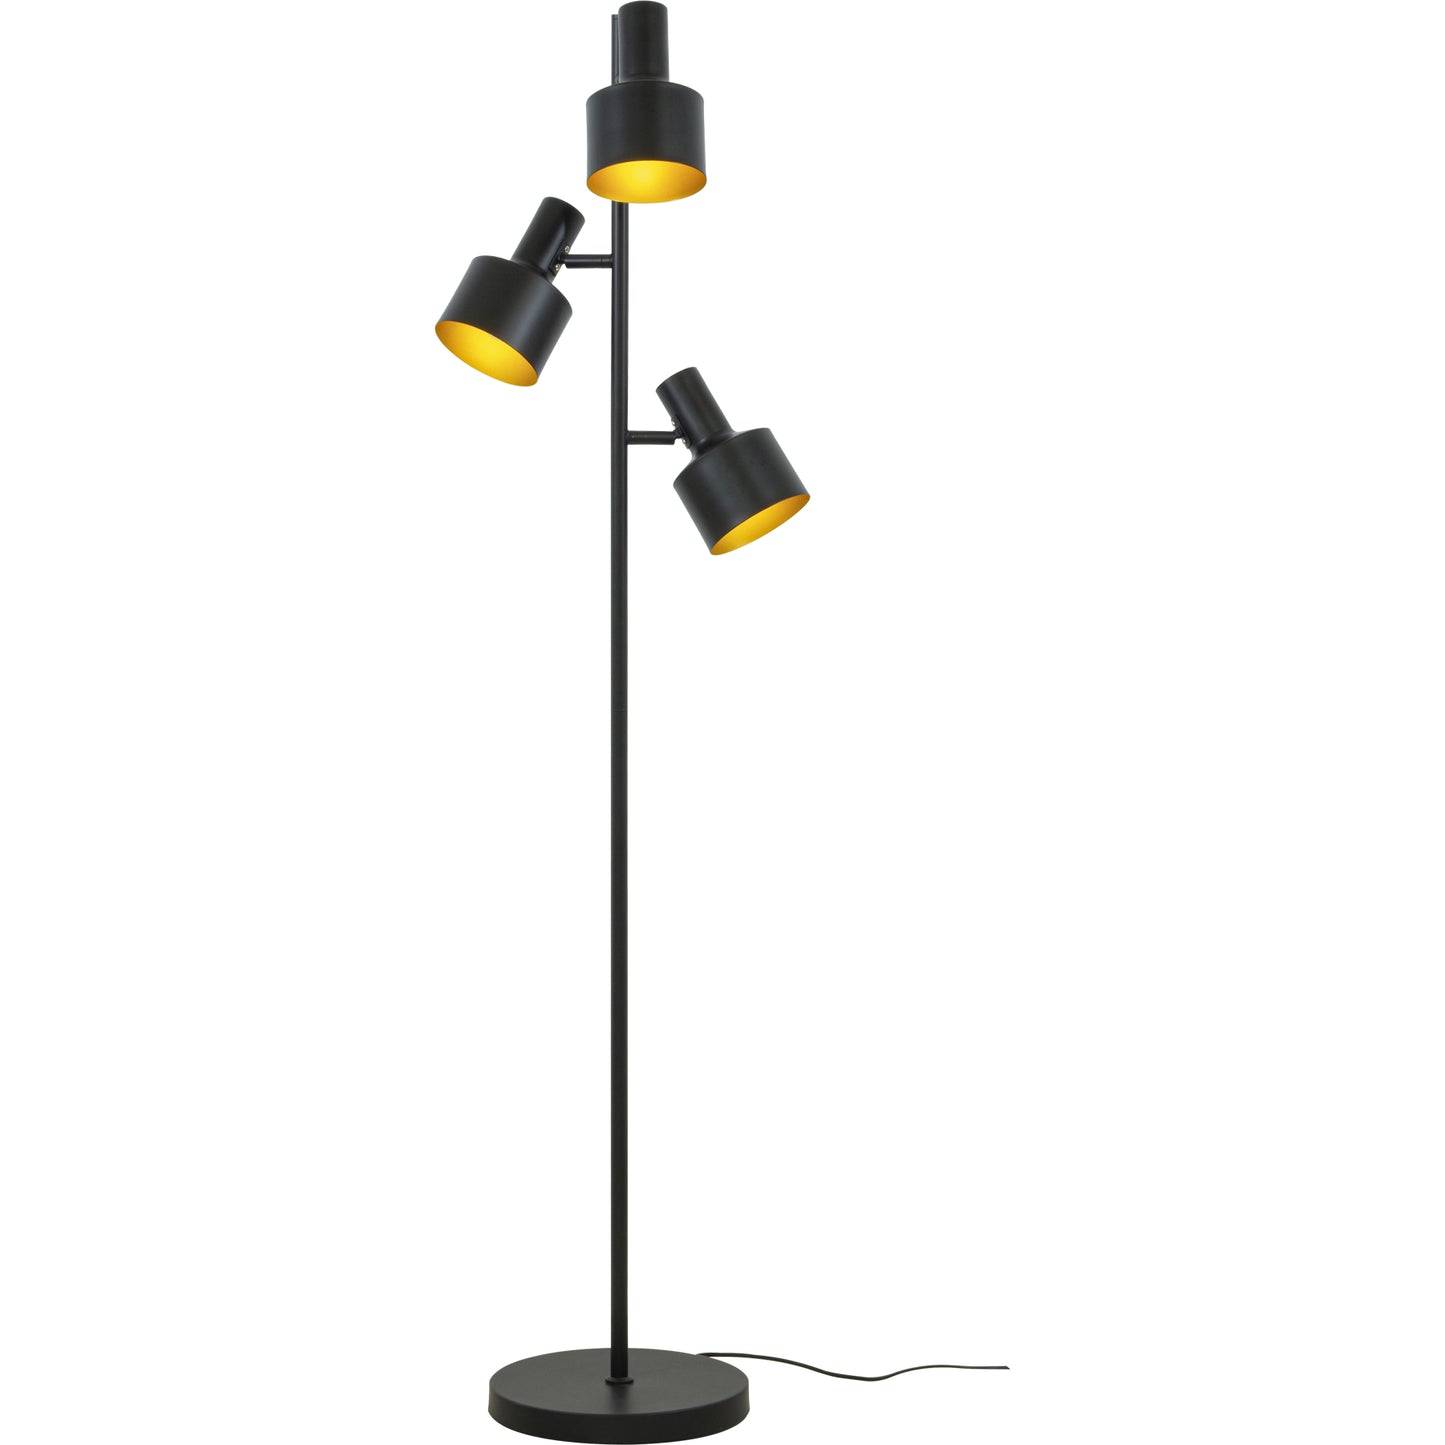 Ferdinand retroinspirert gulvlampe med tre lampehoder langs foten laget i svart metall med gyllen innside av skjermene - Aneta belysning